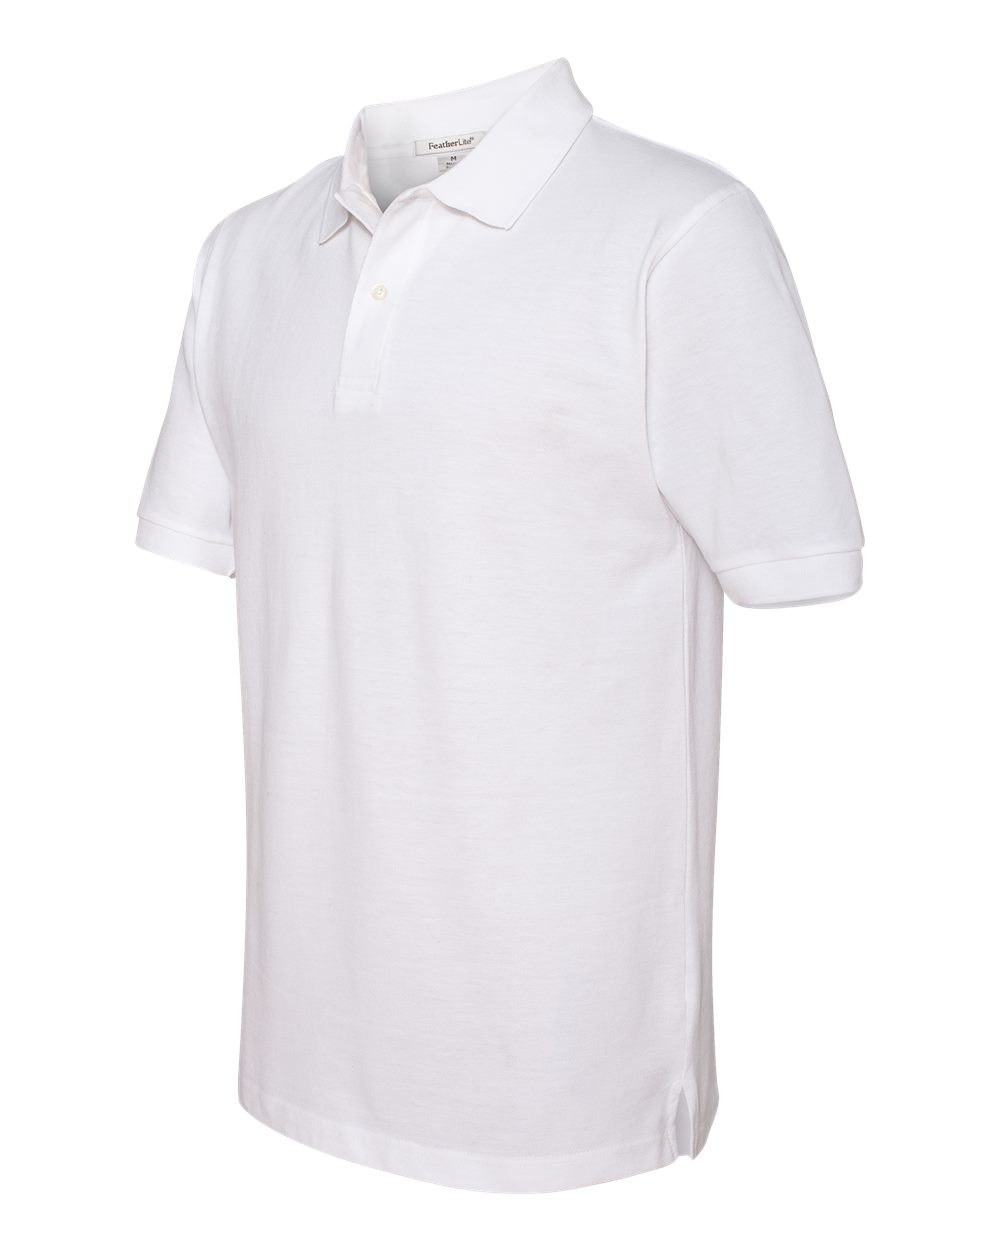 FeatherLite 100% Cotton Pique Sport Shirt - 2100